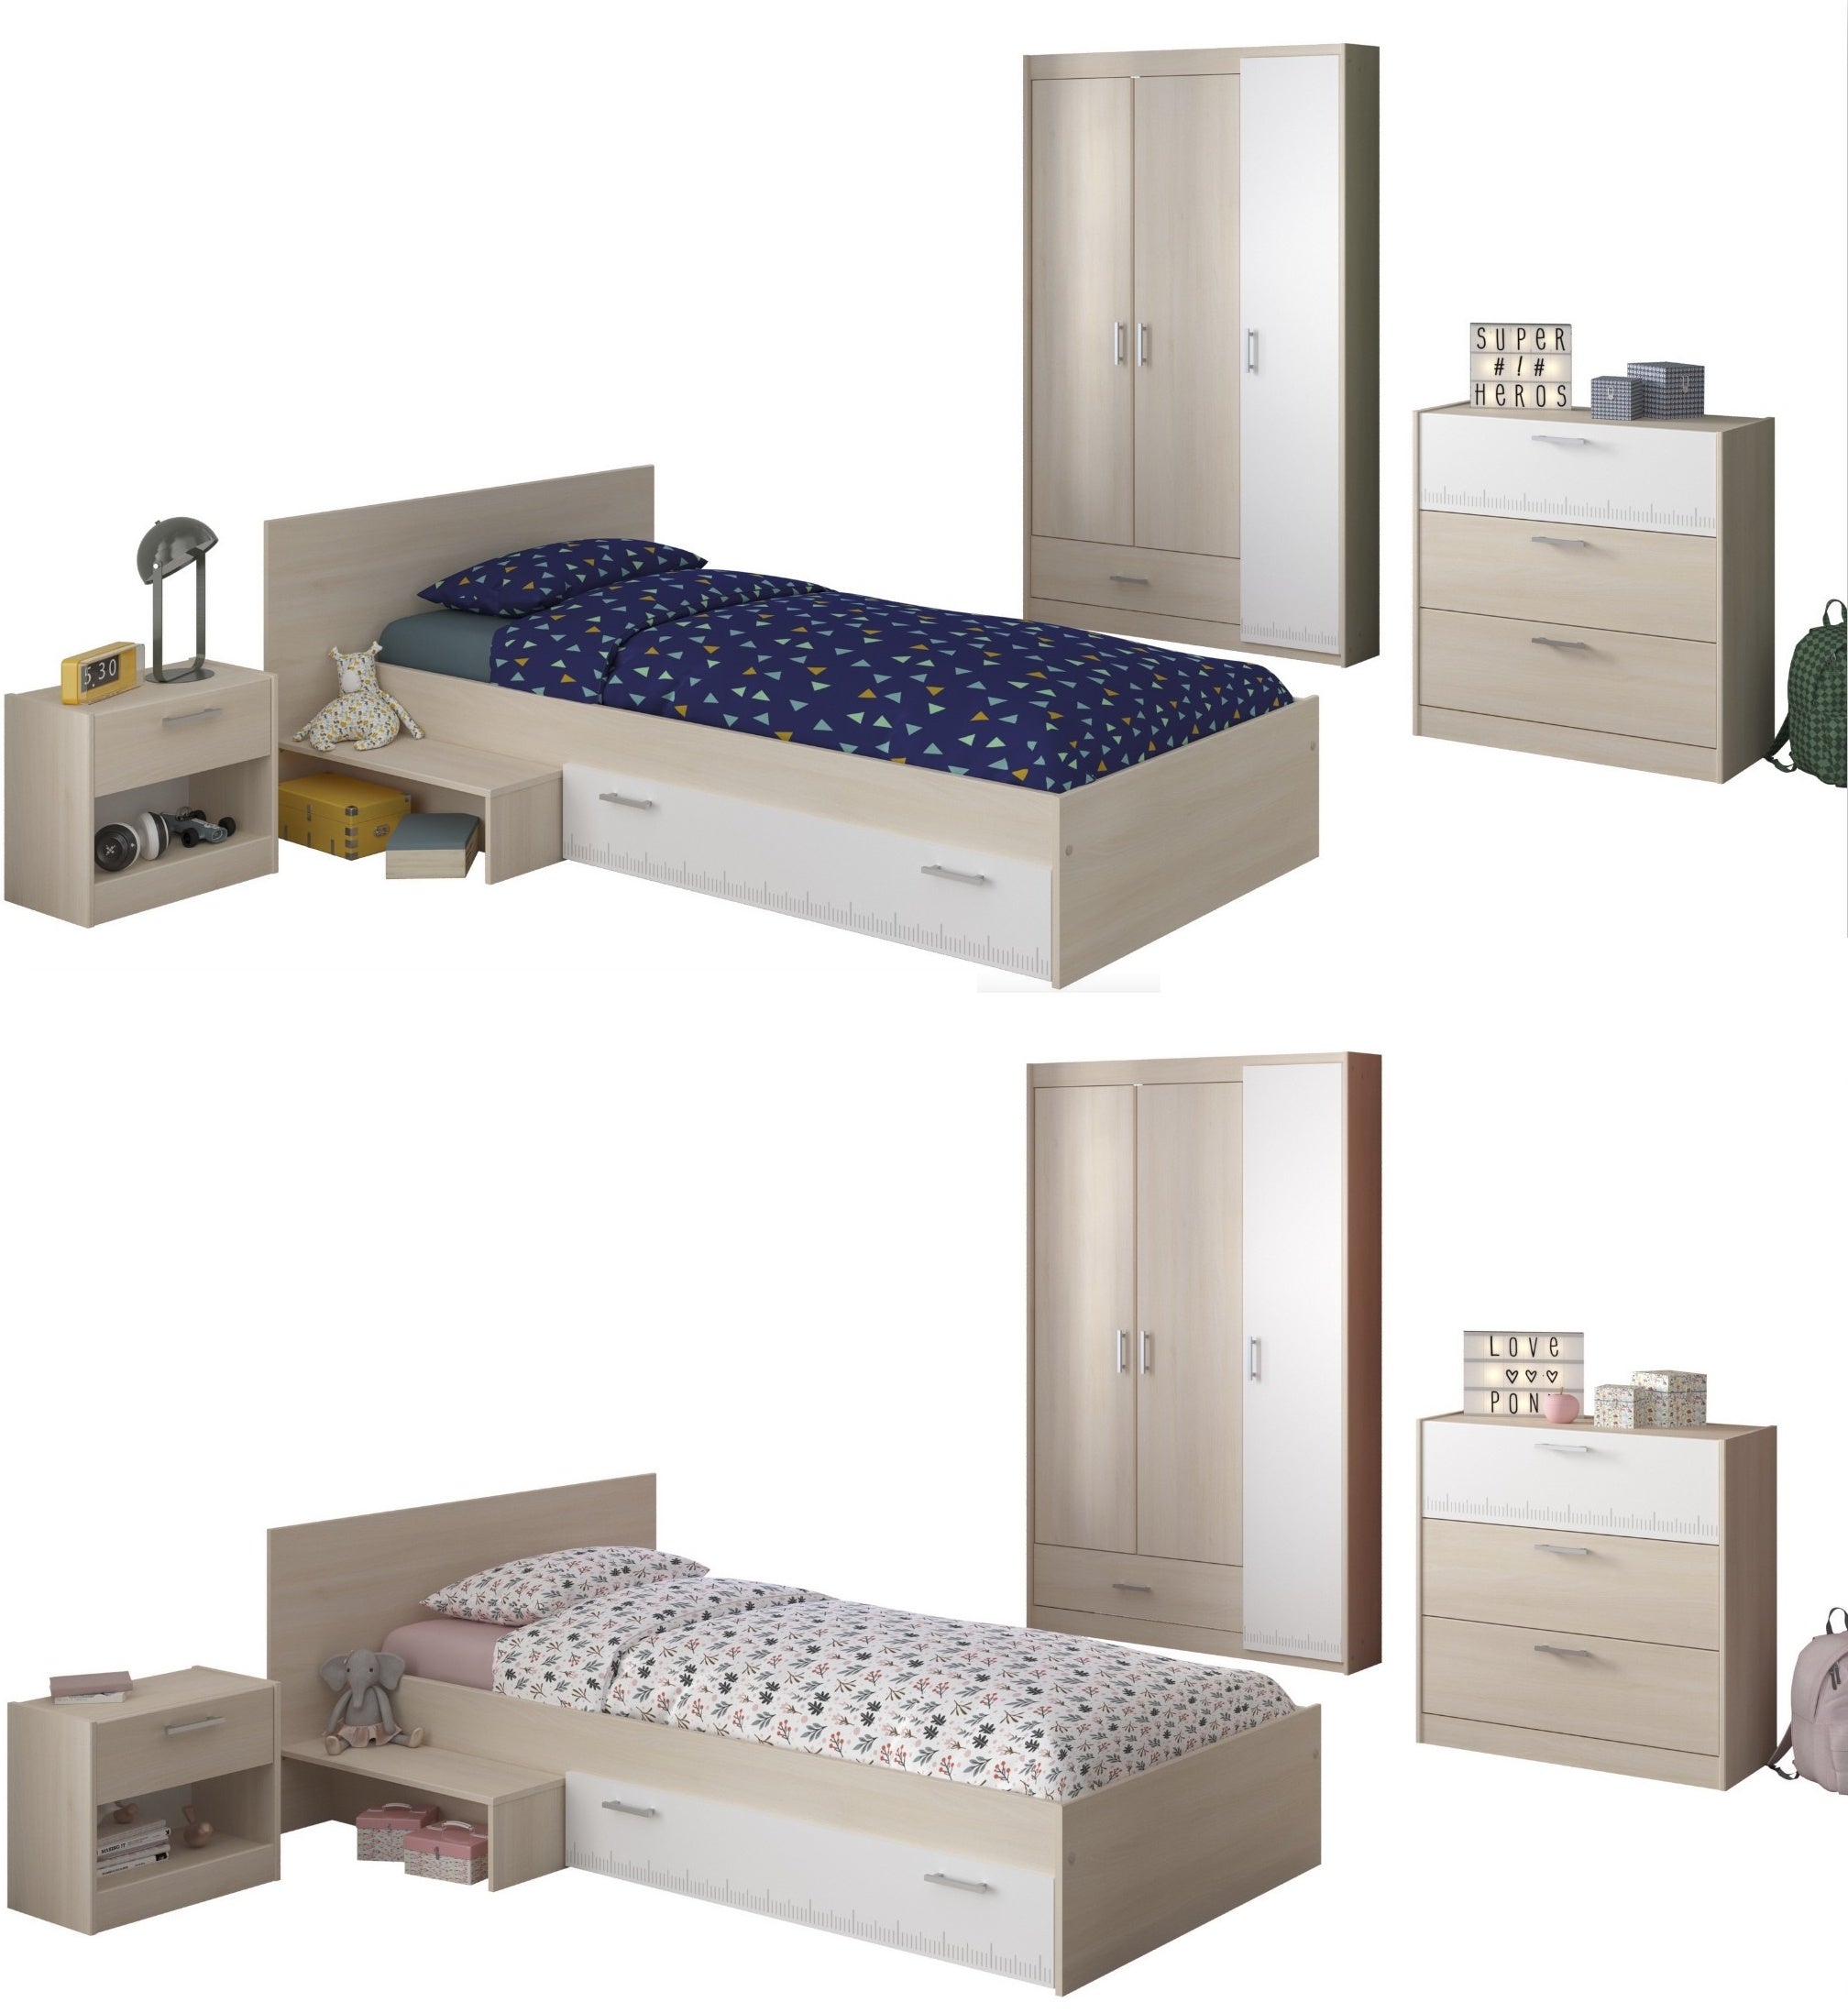 Kinderzimmer Charly 12 Parisot 4-tlg Bett 90*200 cm + Kleiderschrank 3-trg + Kommoden grau - weiß